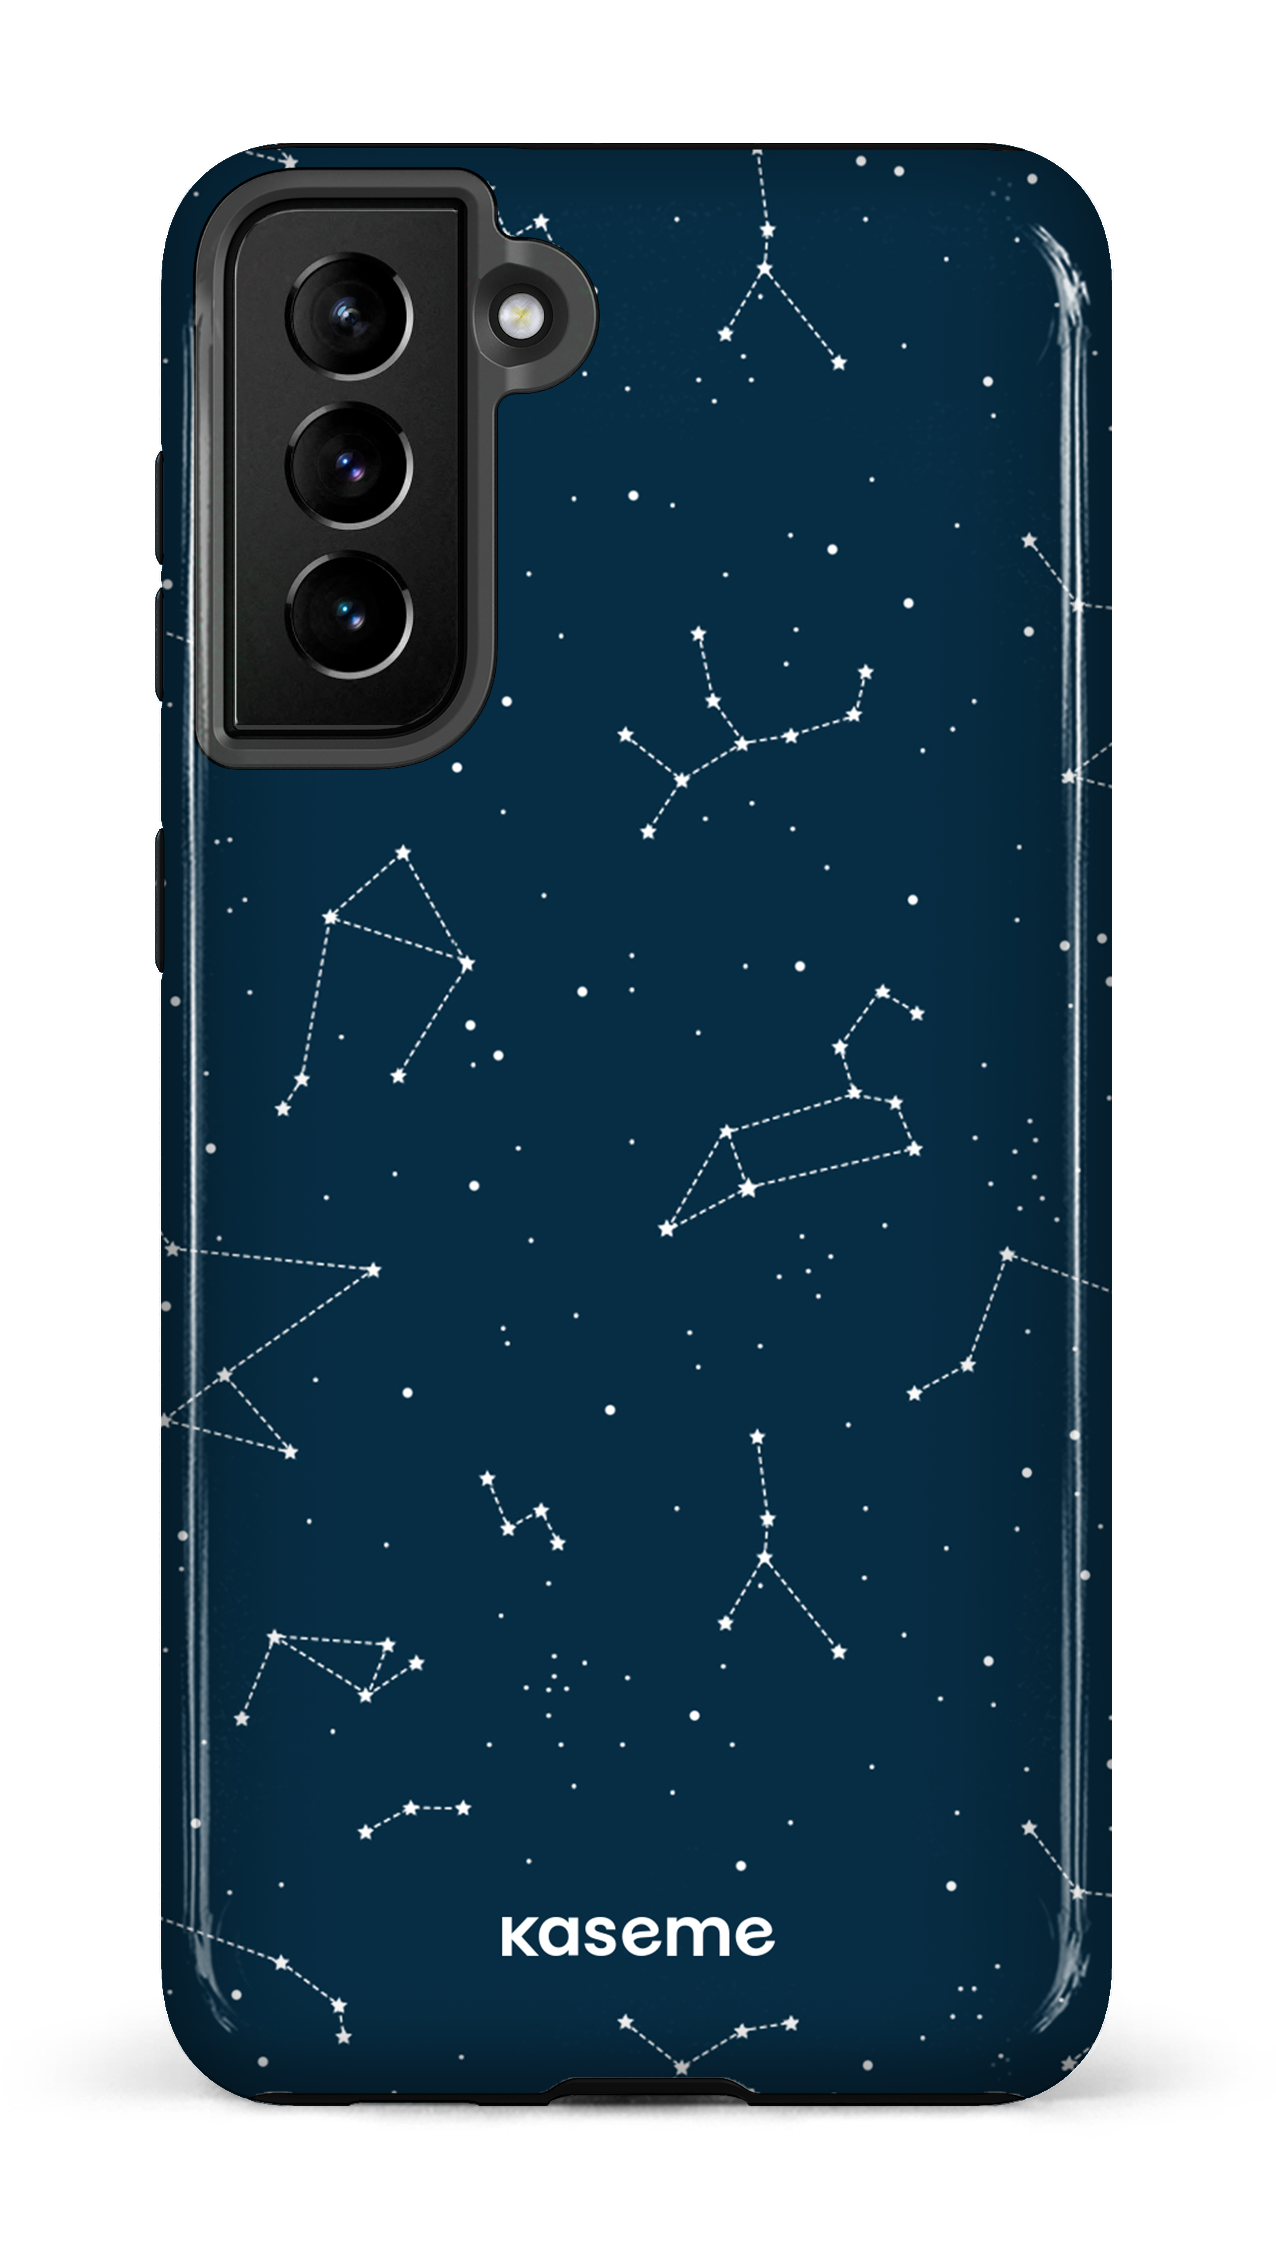 Cosmos - Galaxy S21 Plus